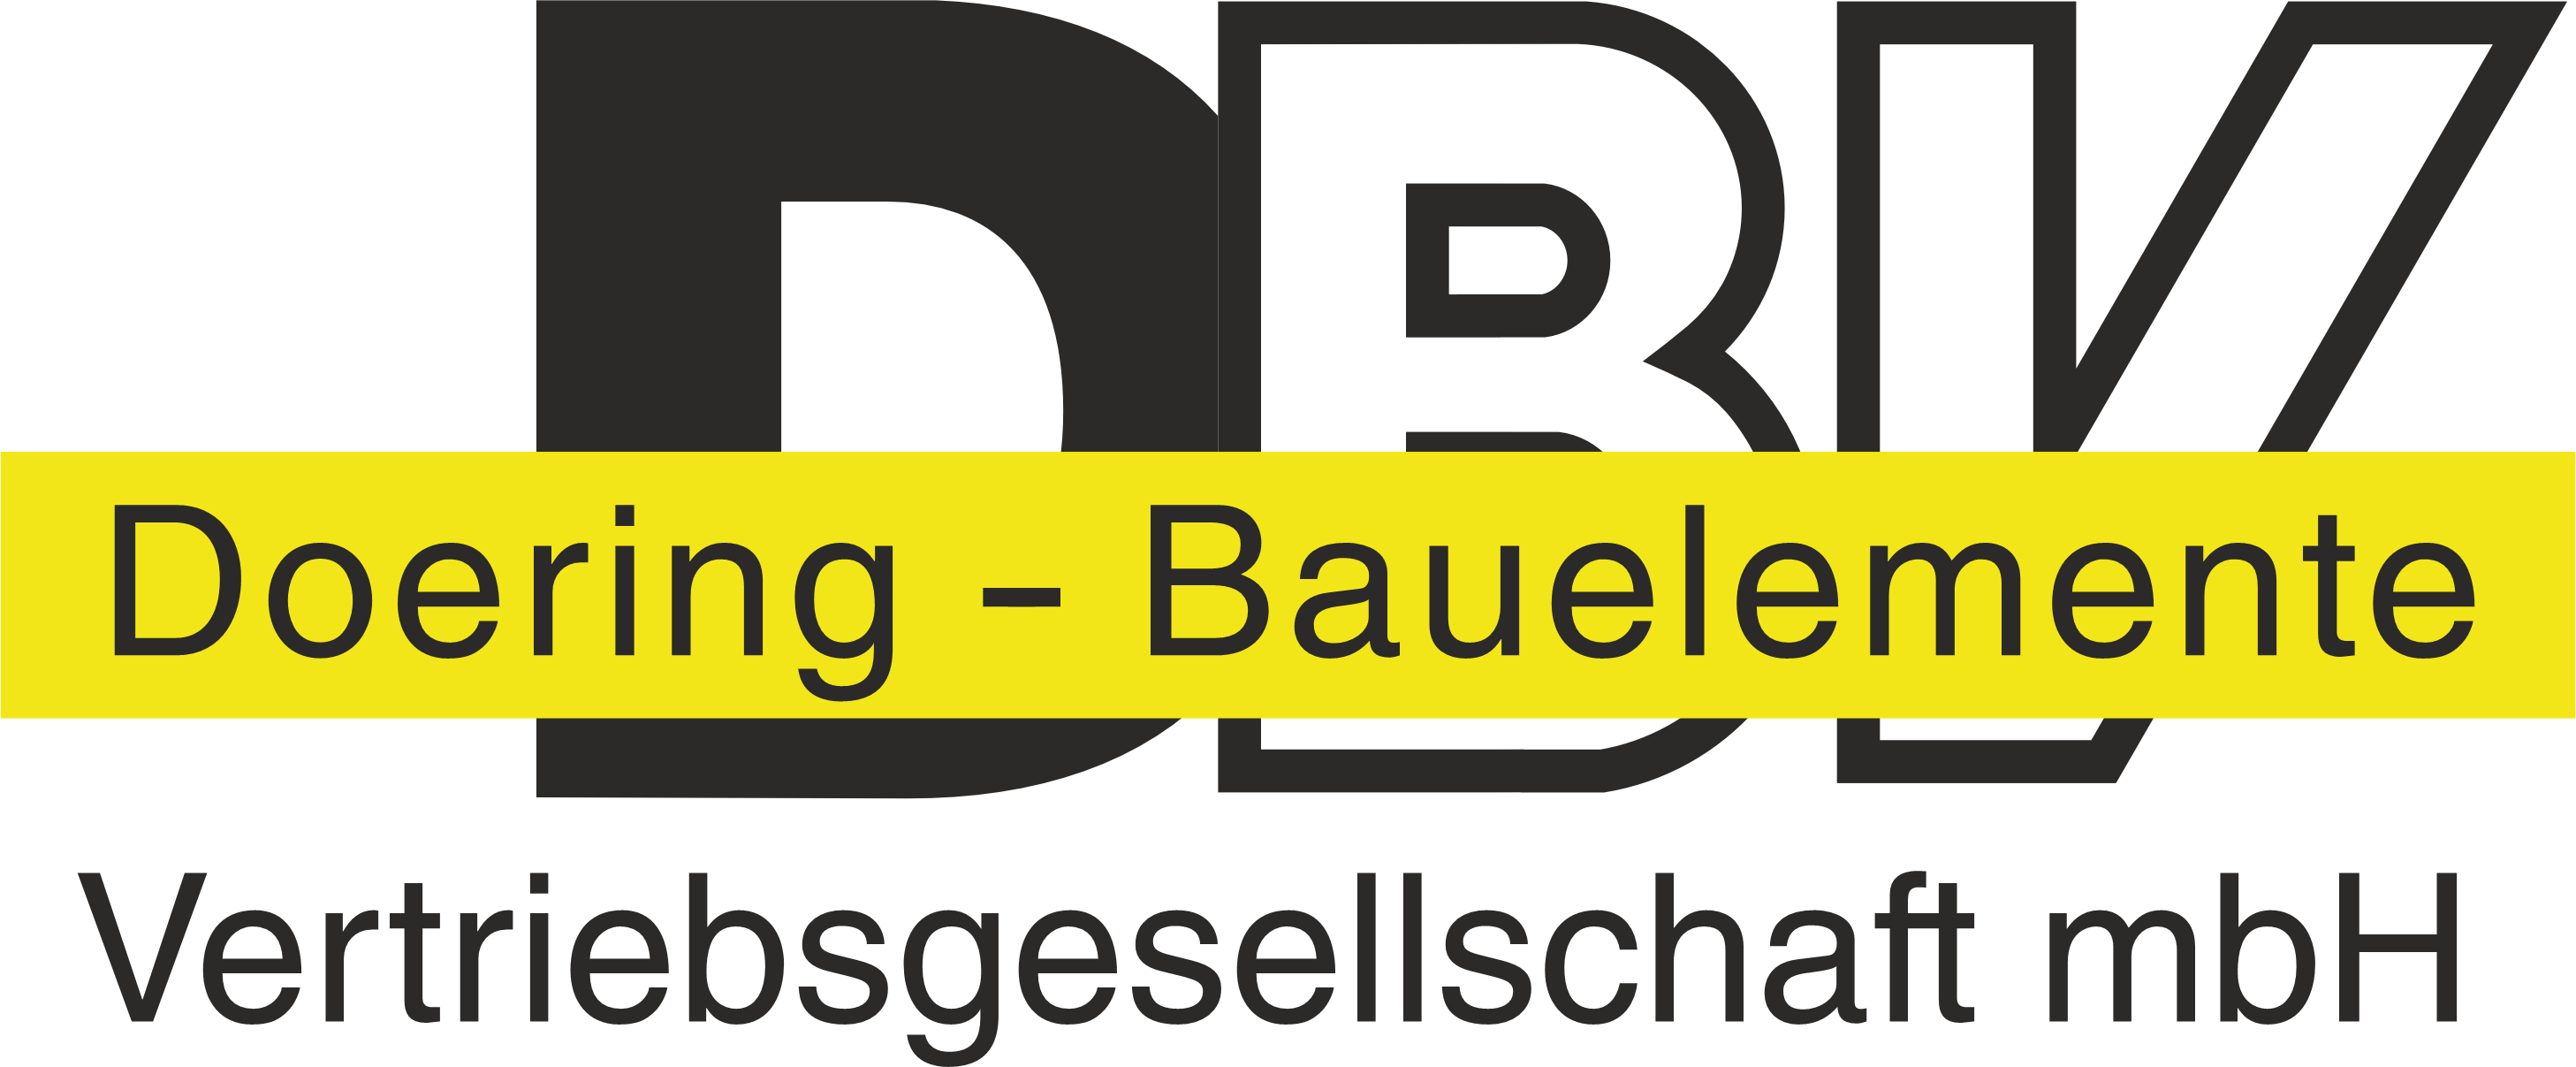 Logo DBV | Doering Bauelemente Vertriebsgesellschaft mbH